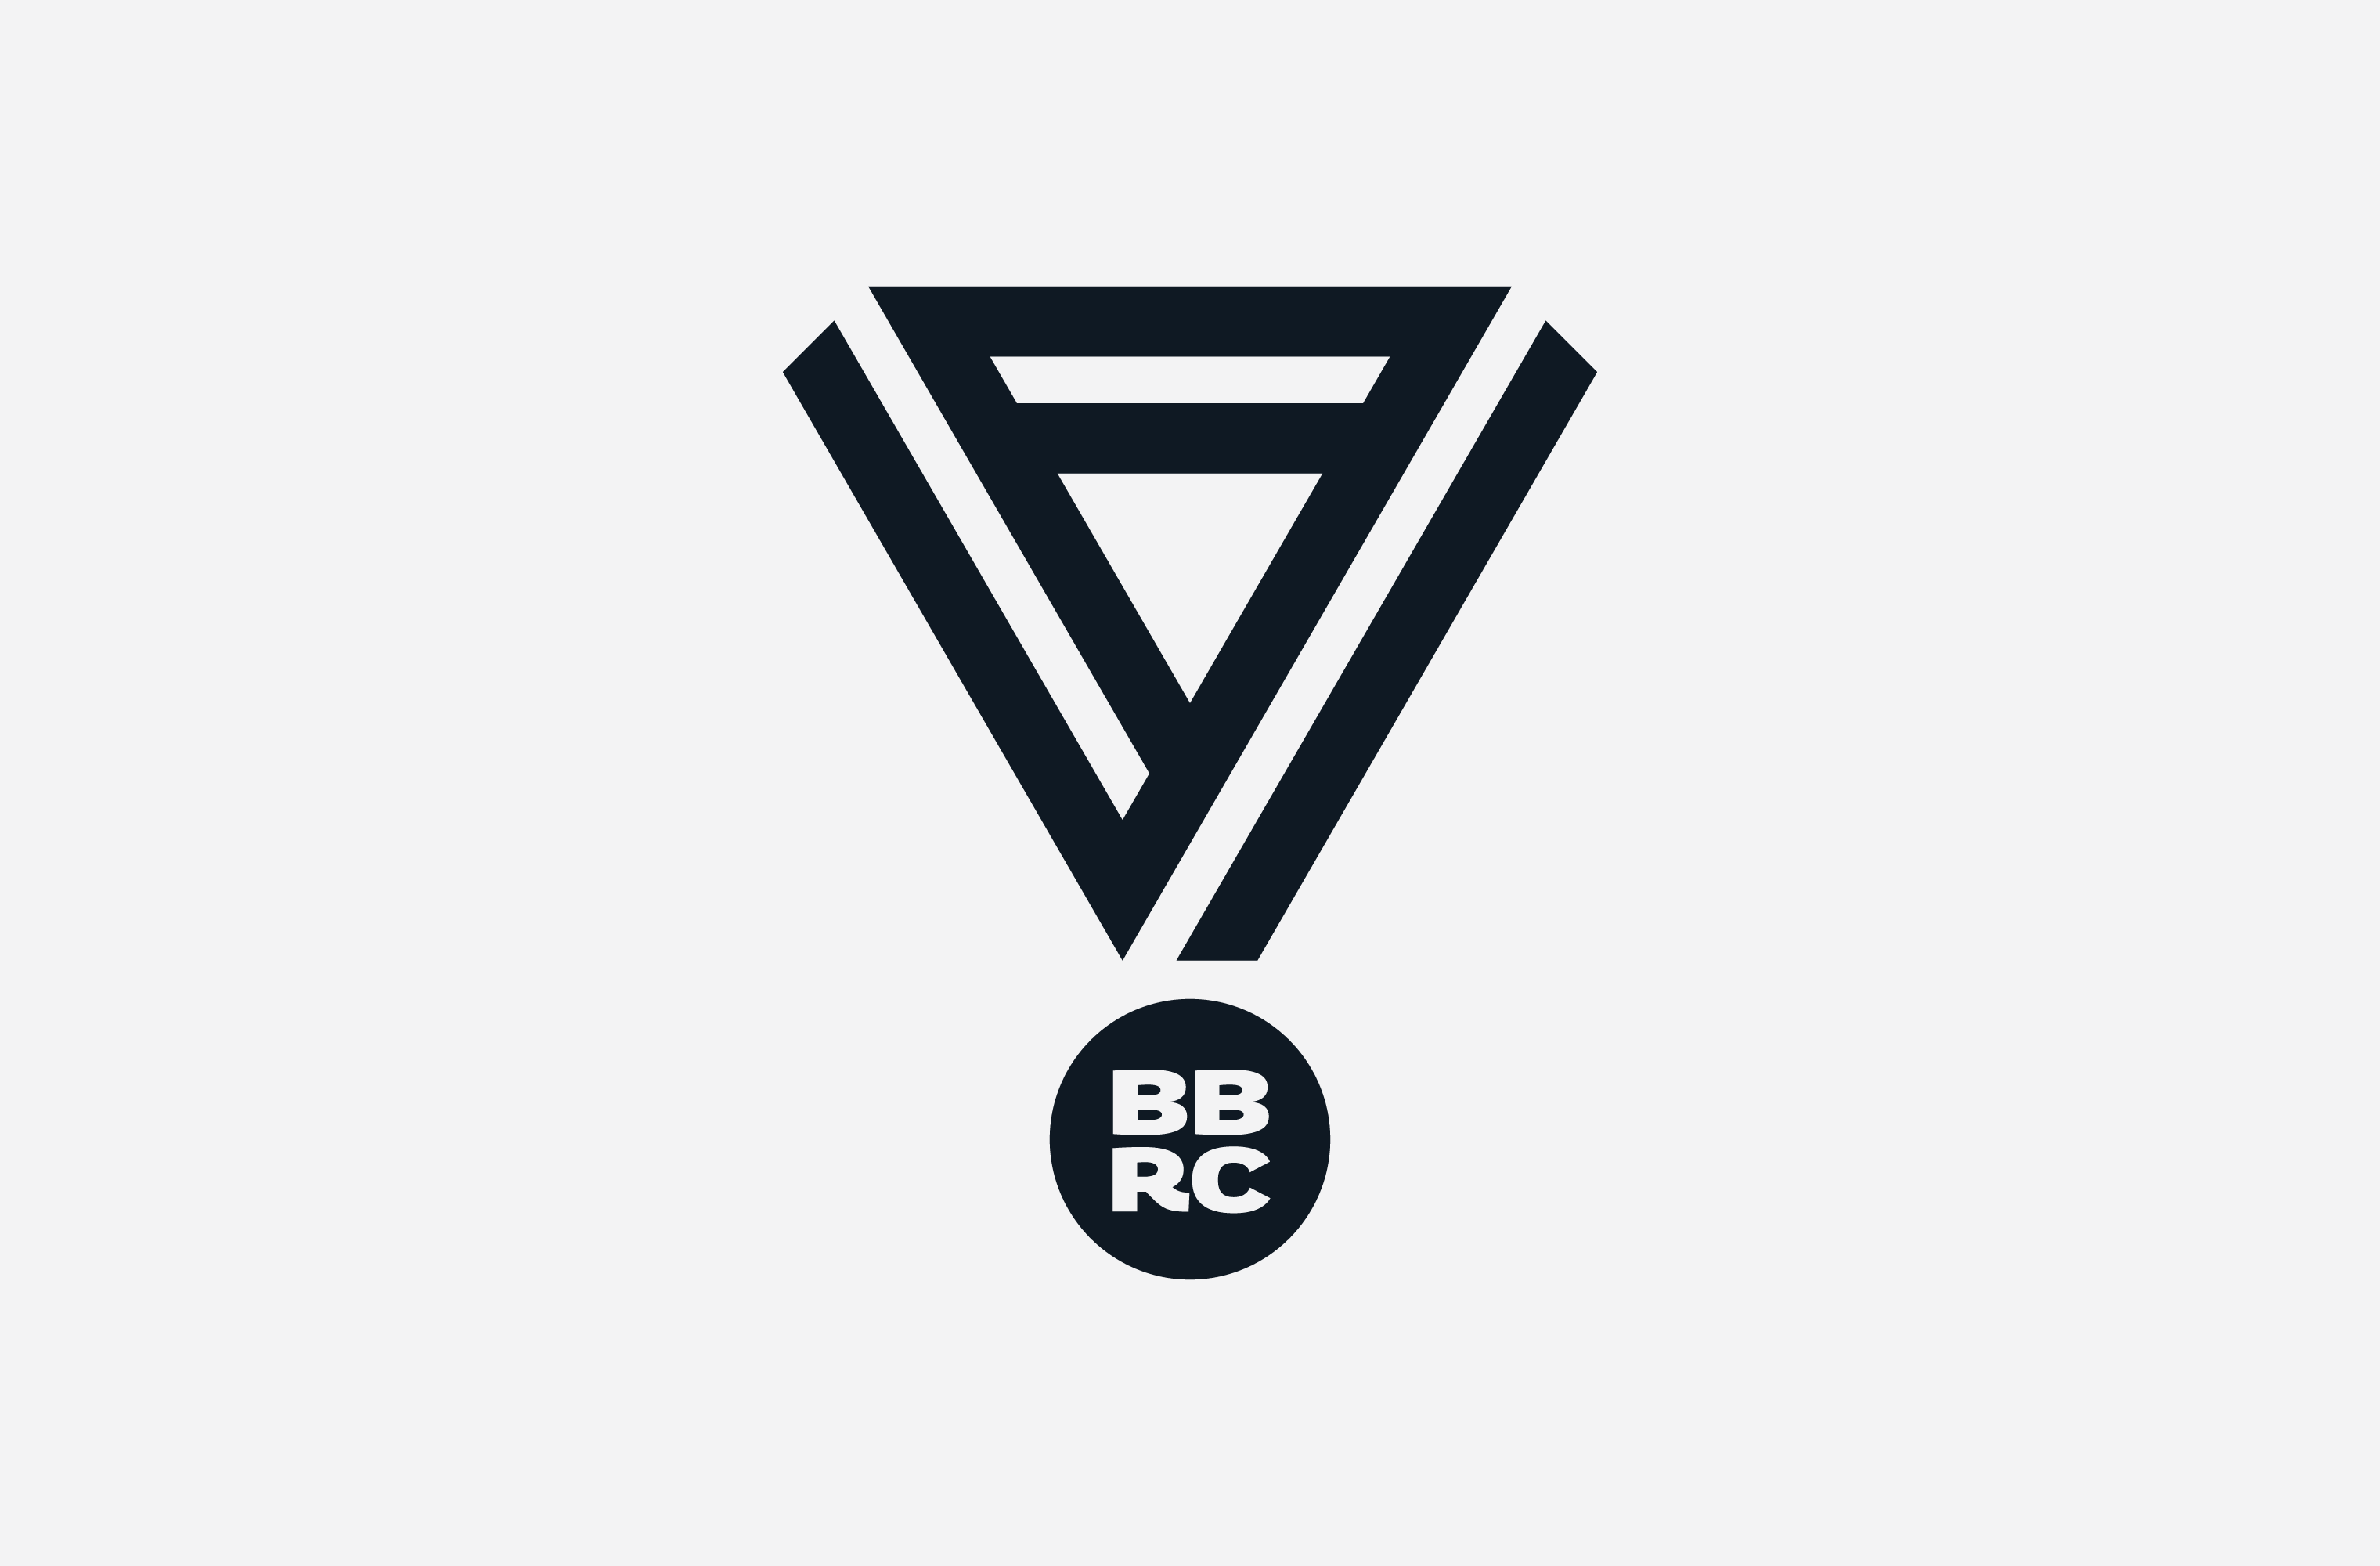 Black Back Bay Run Club medal illustration featuring a BBRC monogram